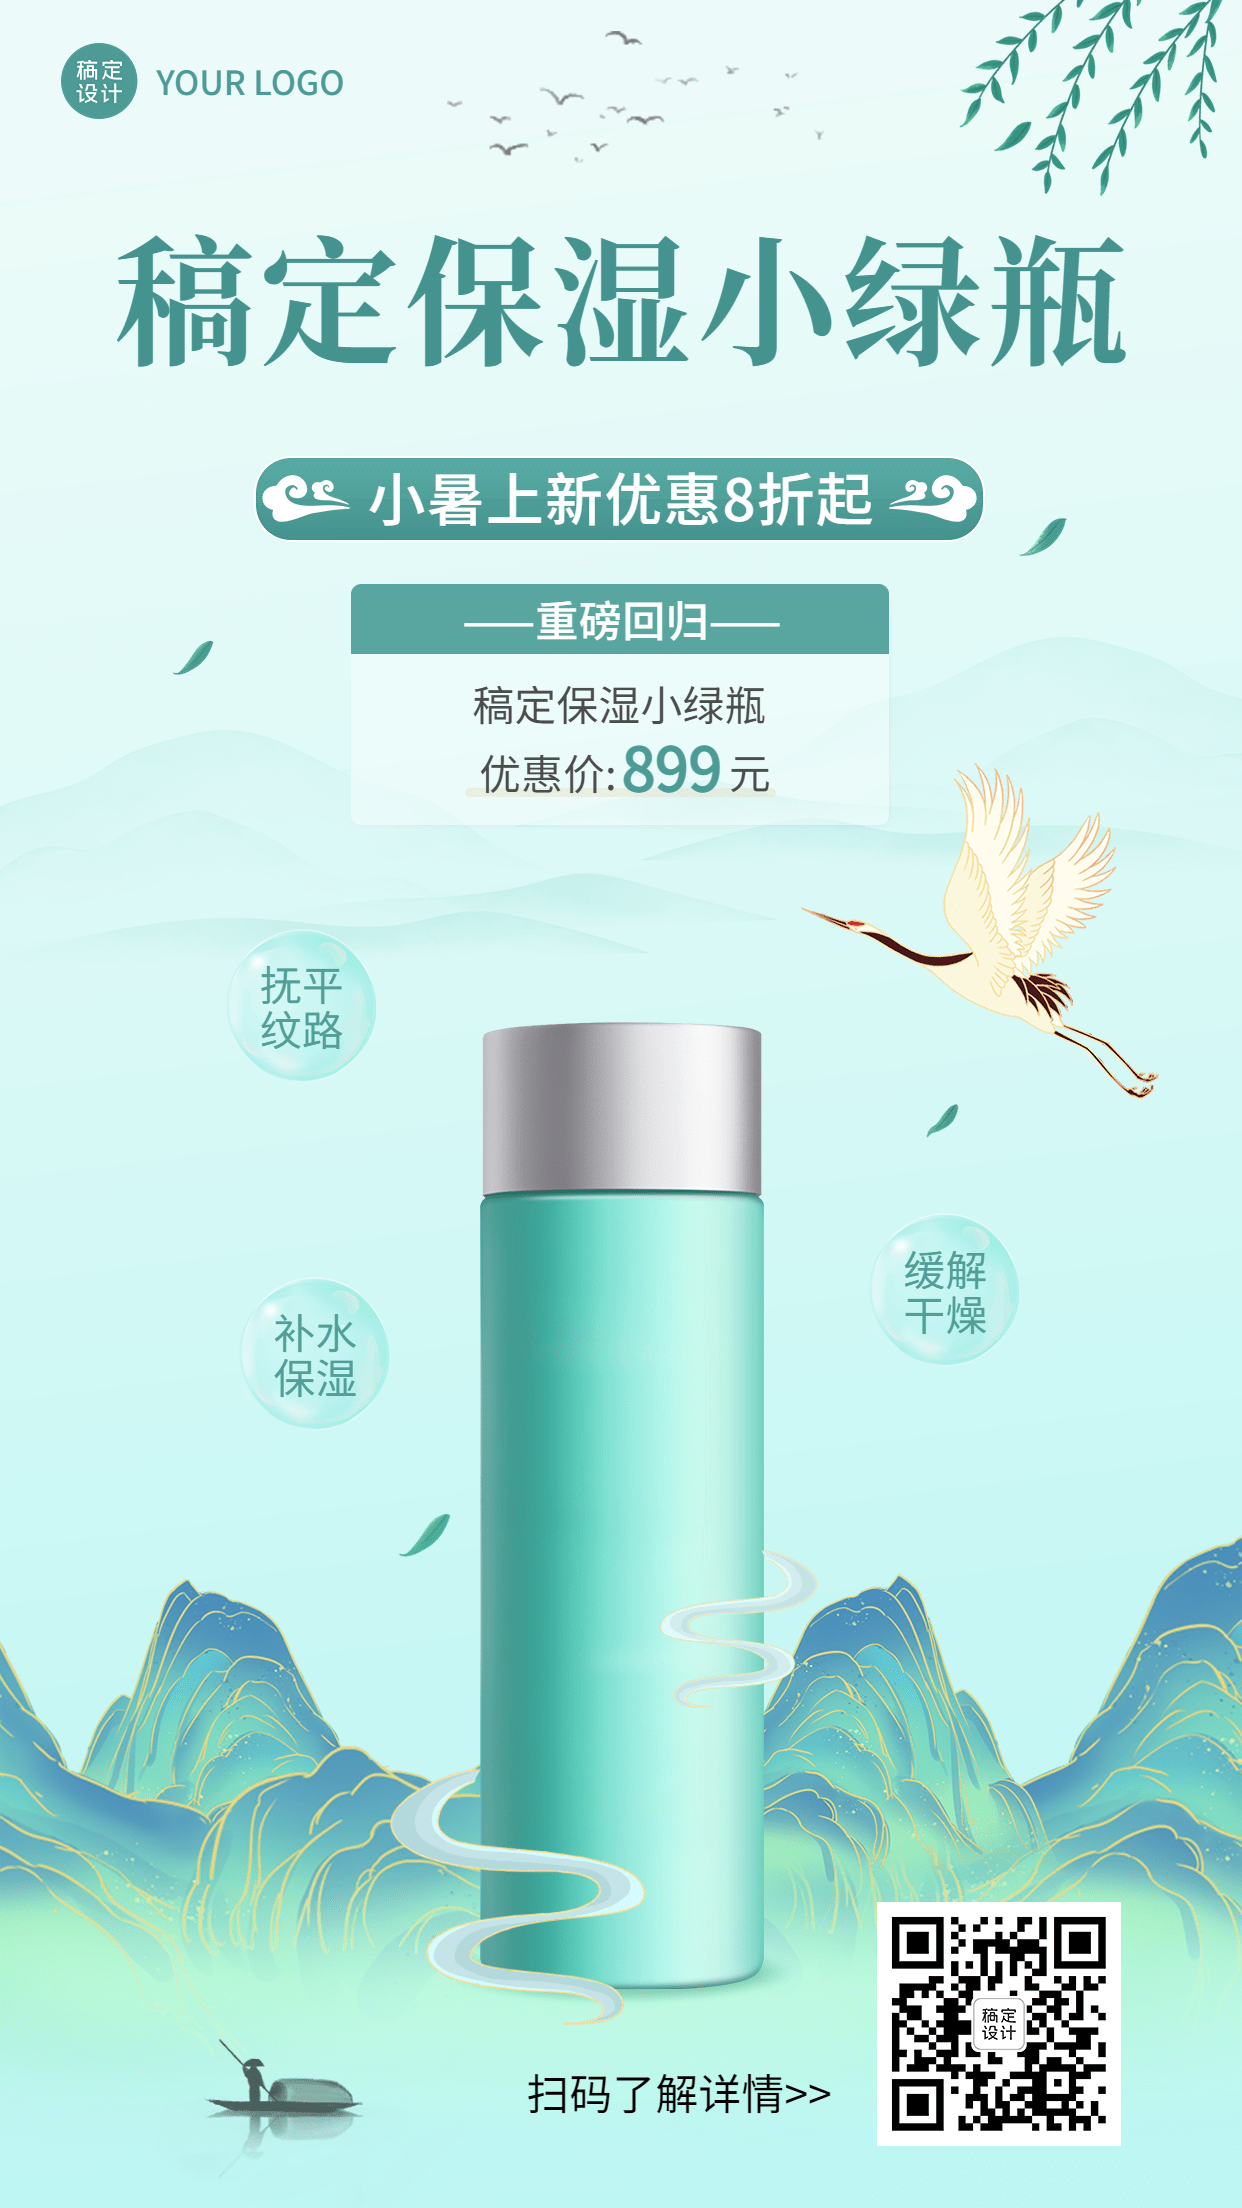 微商小暑美容护肤产品展示营销手机海报